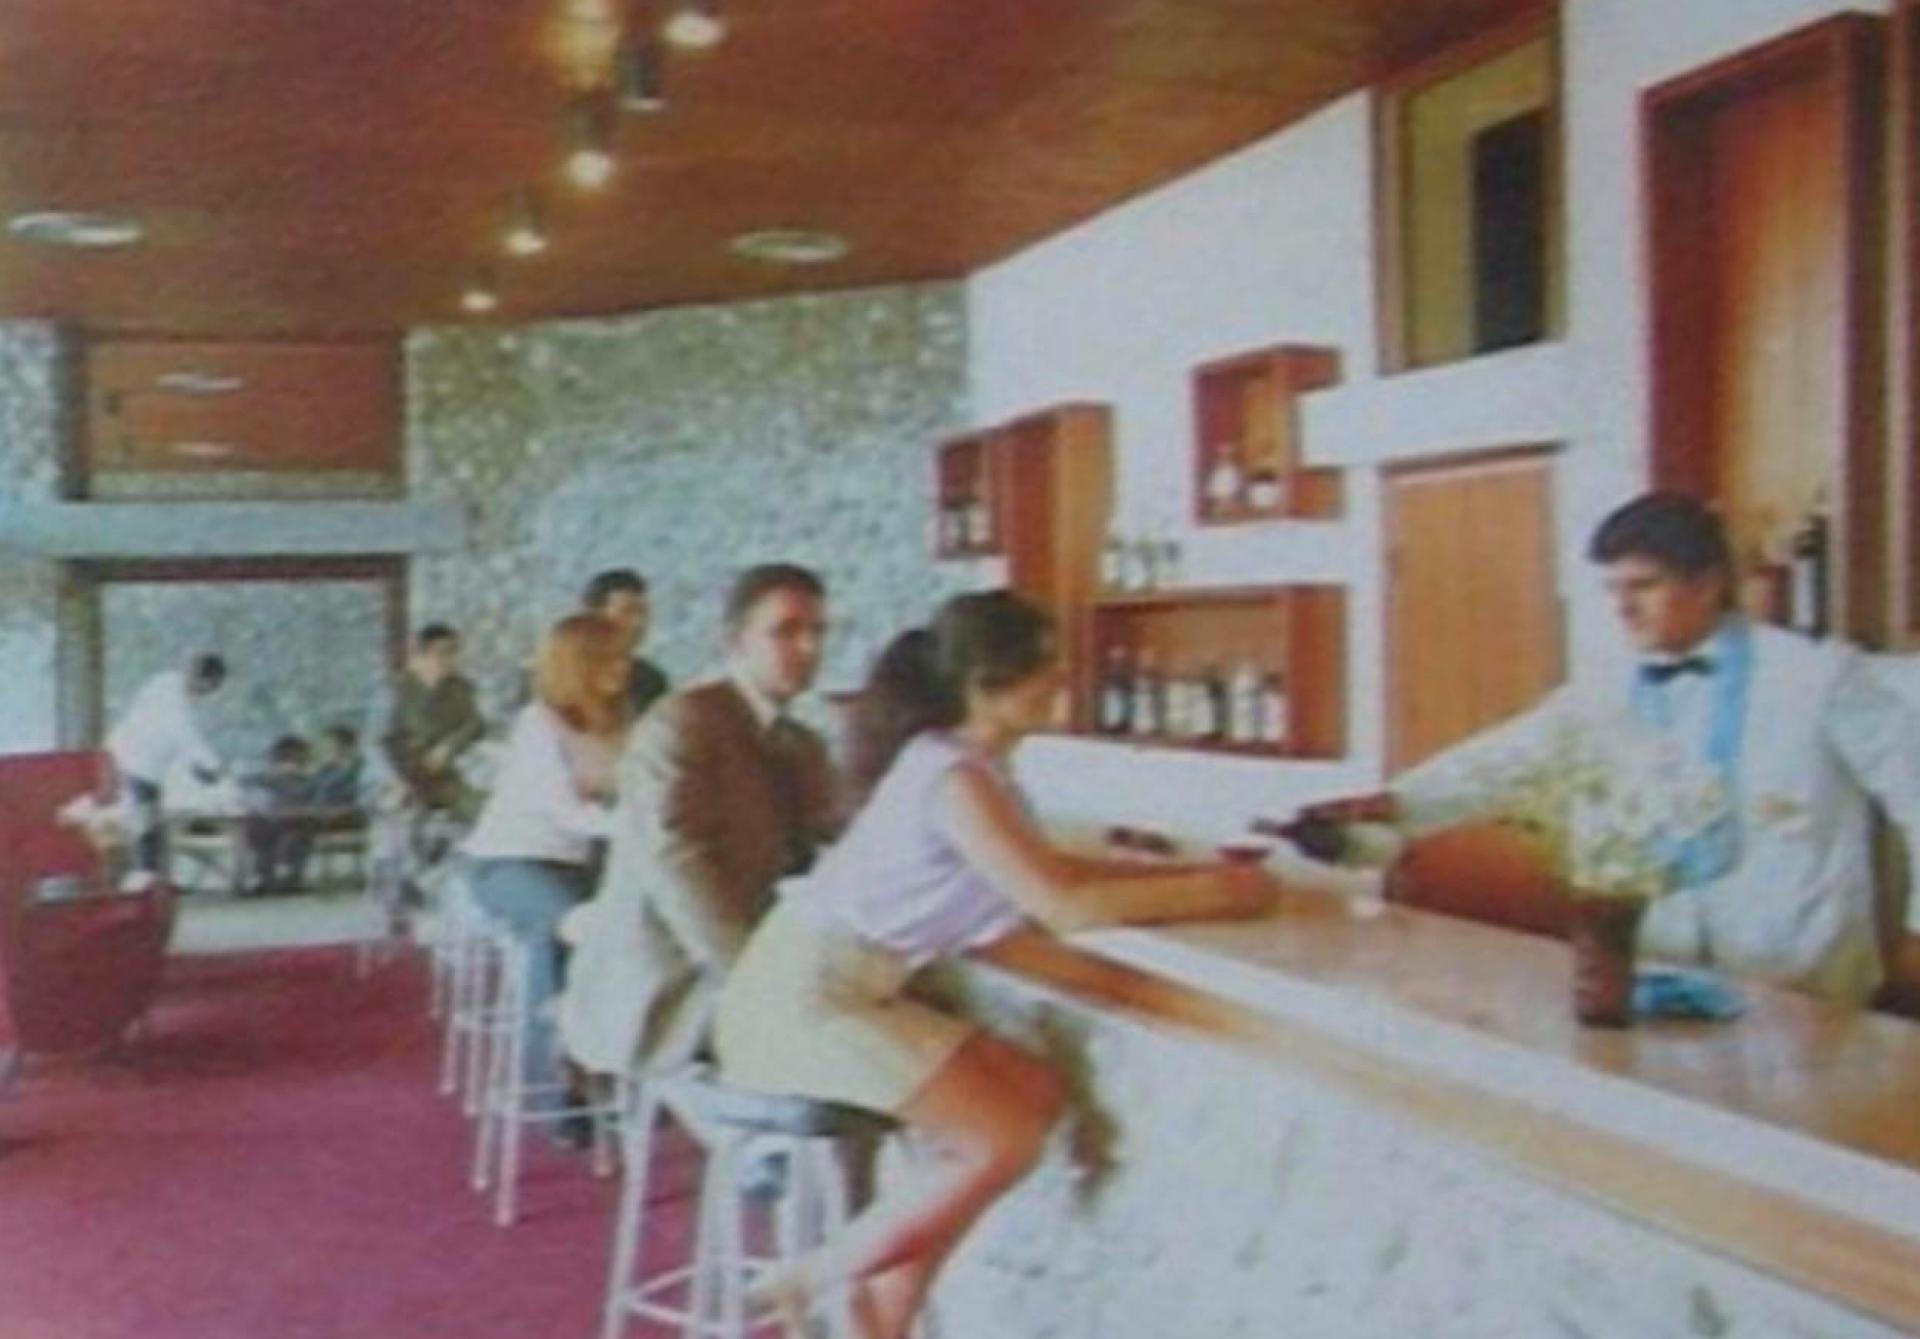 The interior of Hotel Podgorica in the 1970s | Photo © Podgorički cikotići